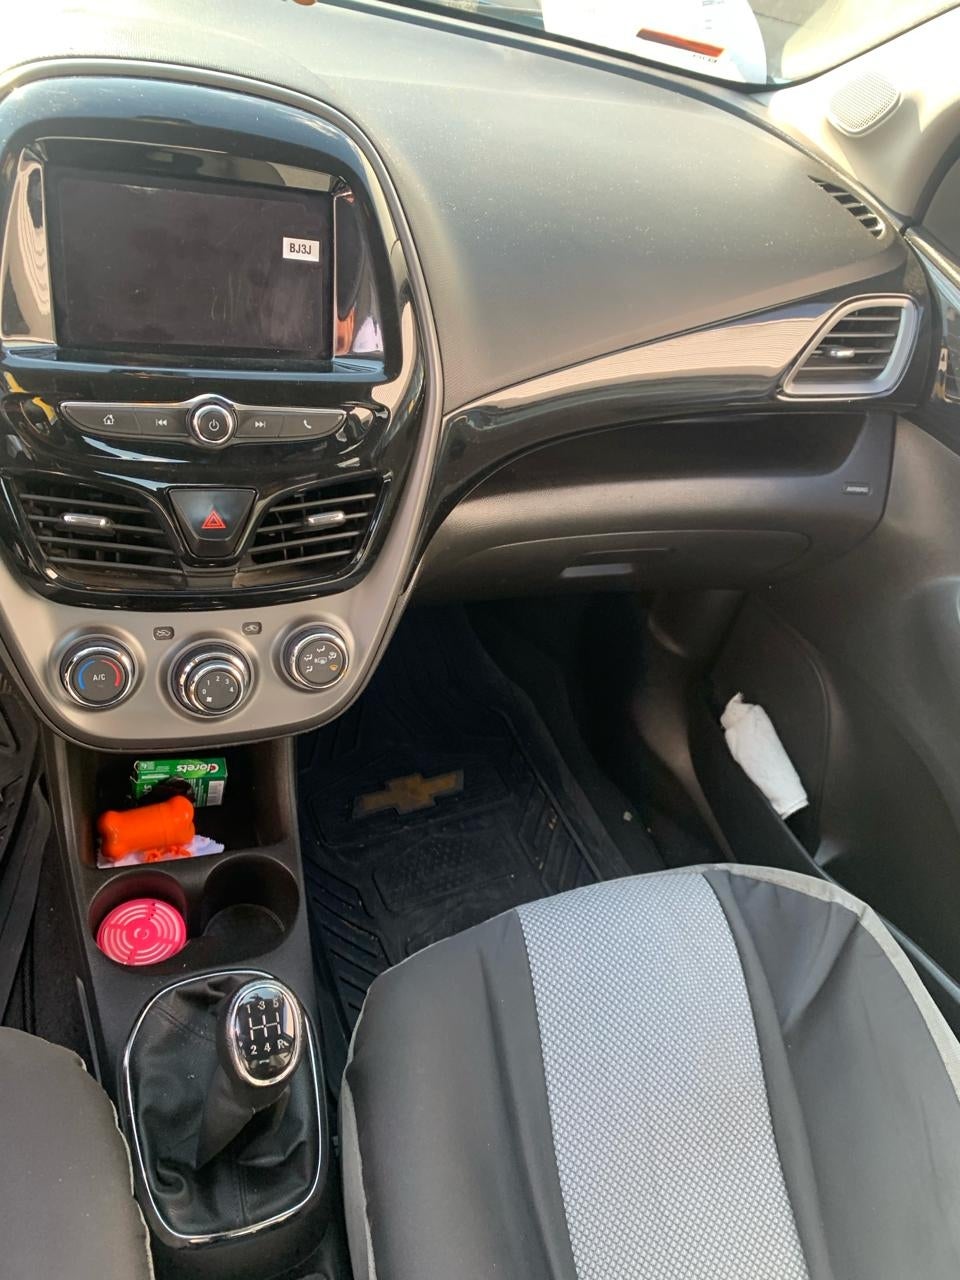 2019 Chevrolet Spark 5 pts. HB Premier, 1.4l, TM5, a/ac., pantalla touch 7